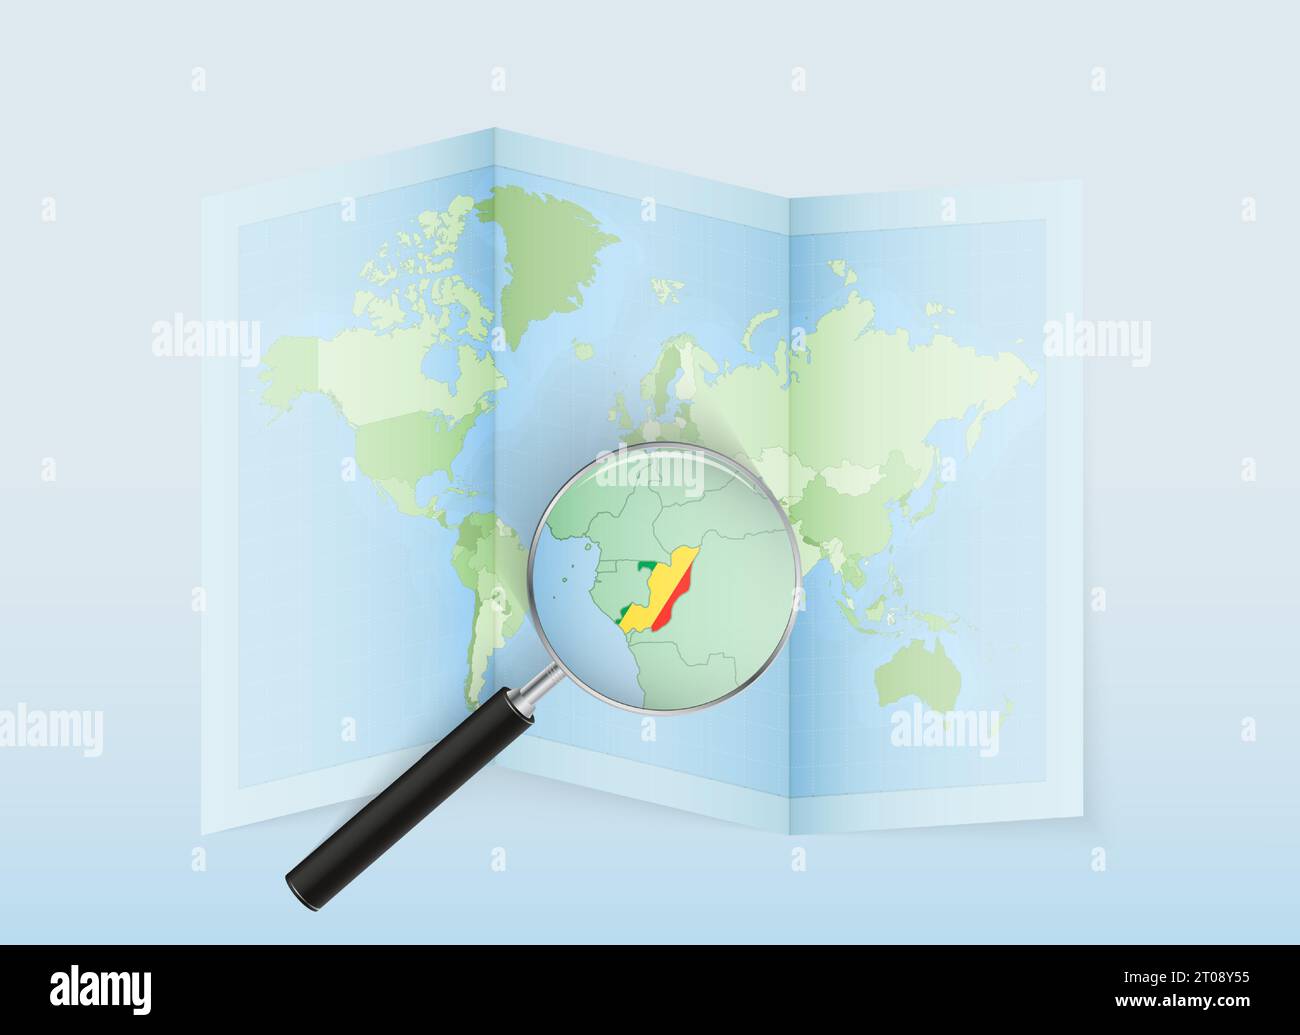 Une carte du monde pliée avec une loupe pointant vers le Congo. Carte et drapeau de l'Italie en loupe. Illustration vectorielle dans le ton de couleur bleue. Illustration de Vecteur